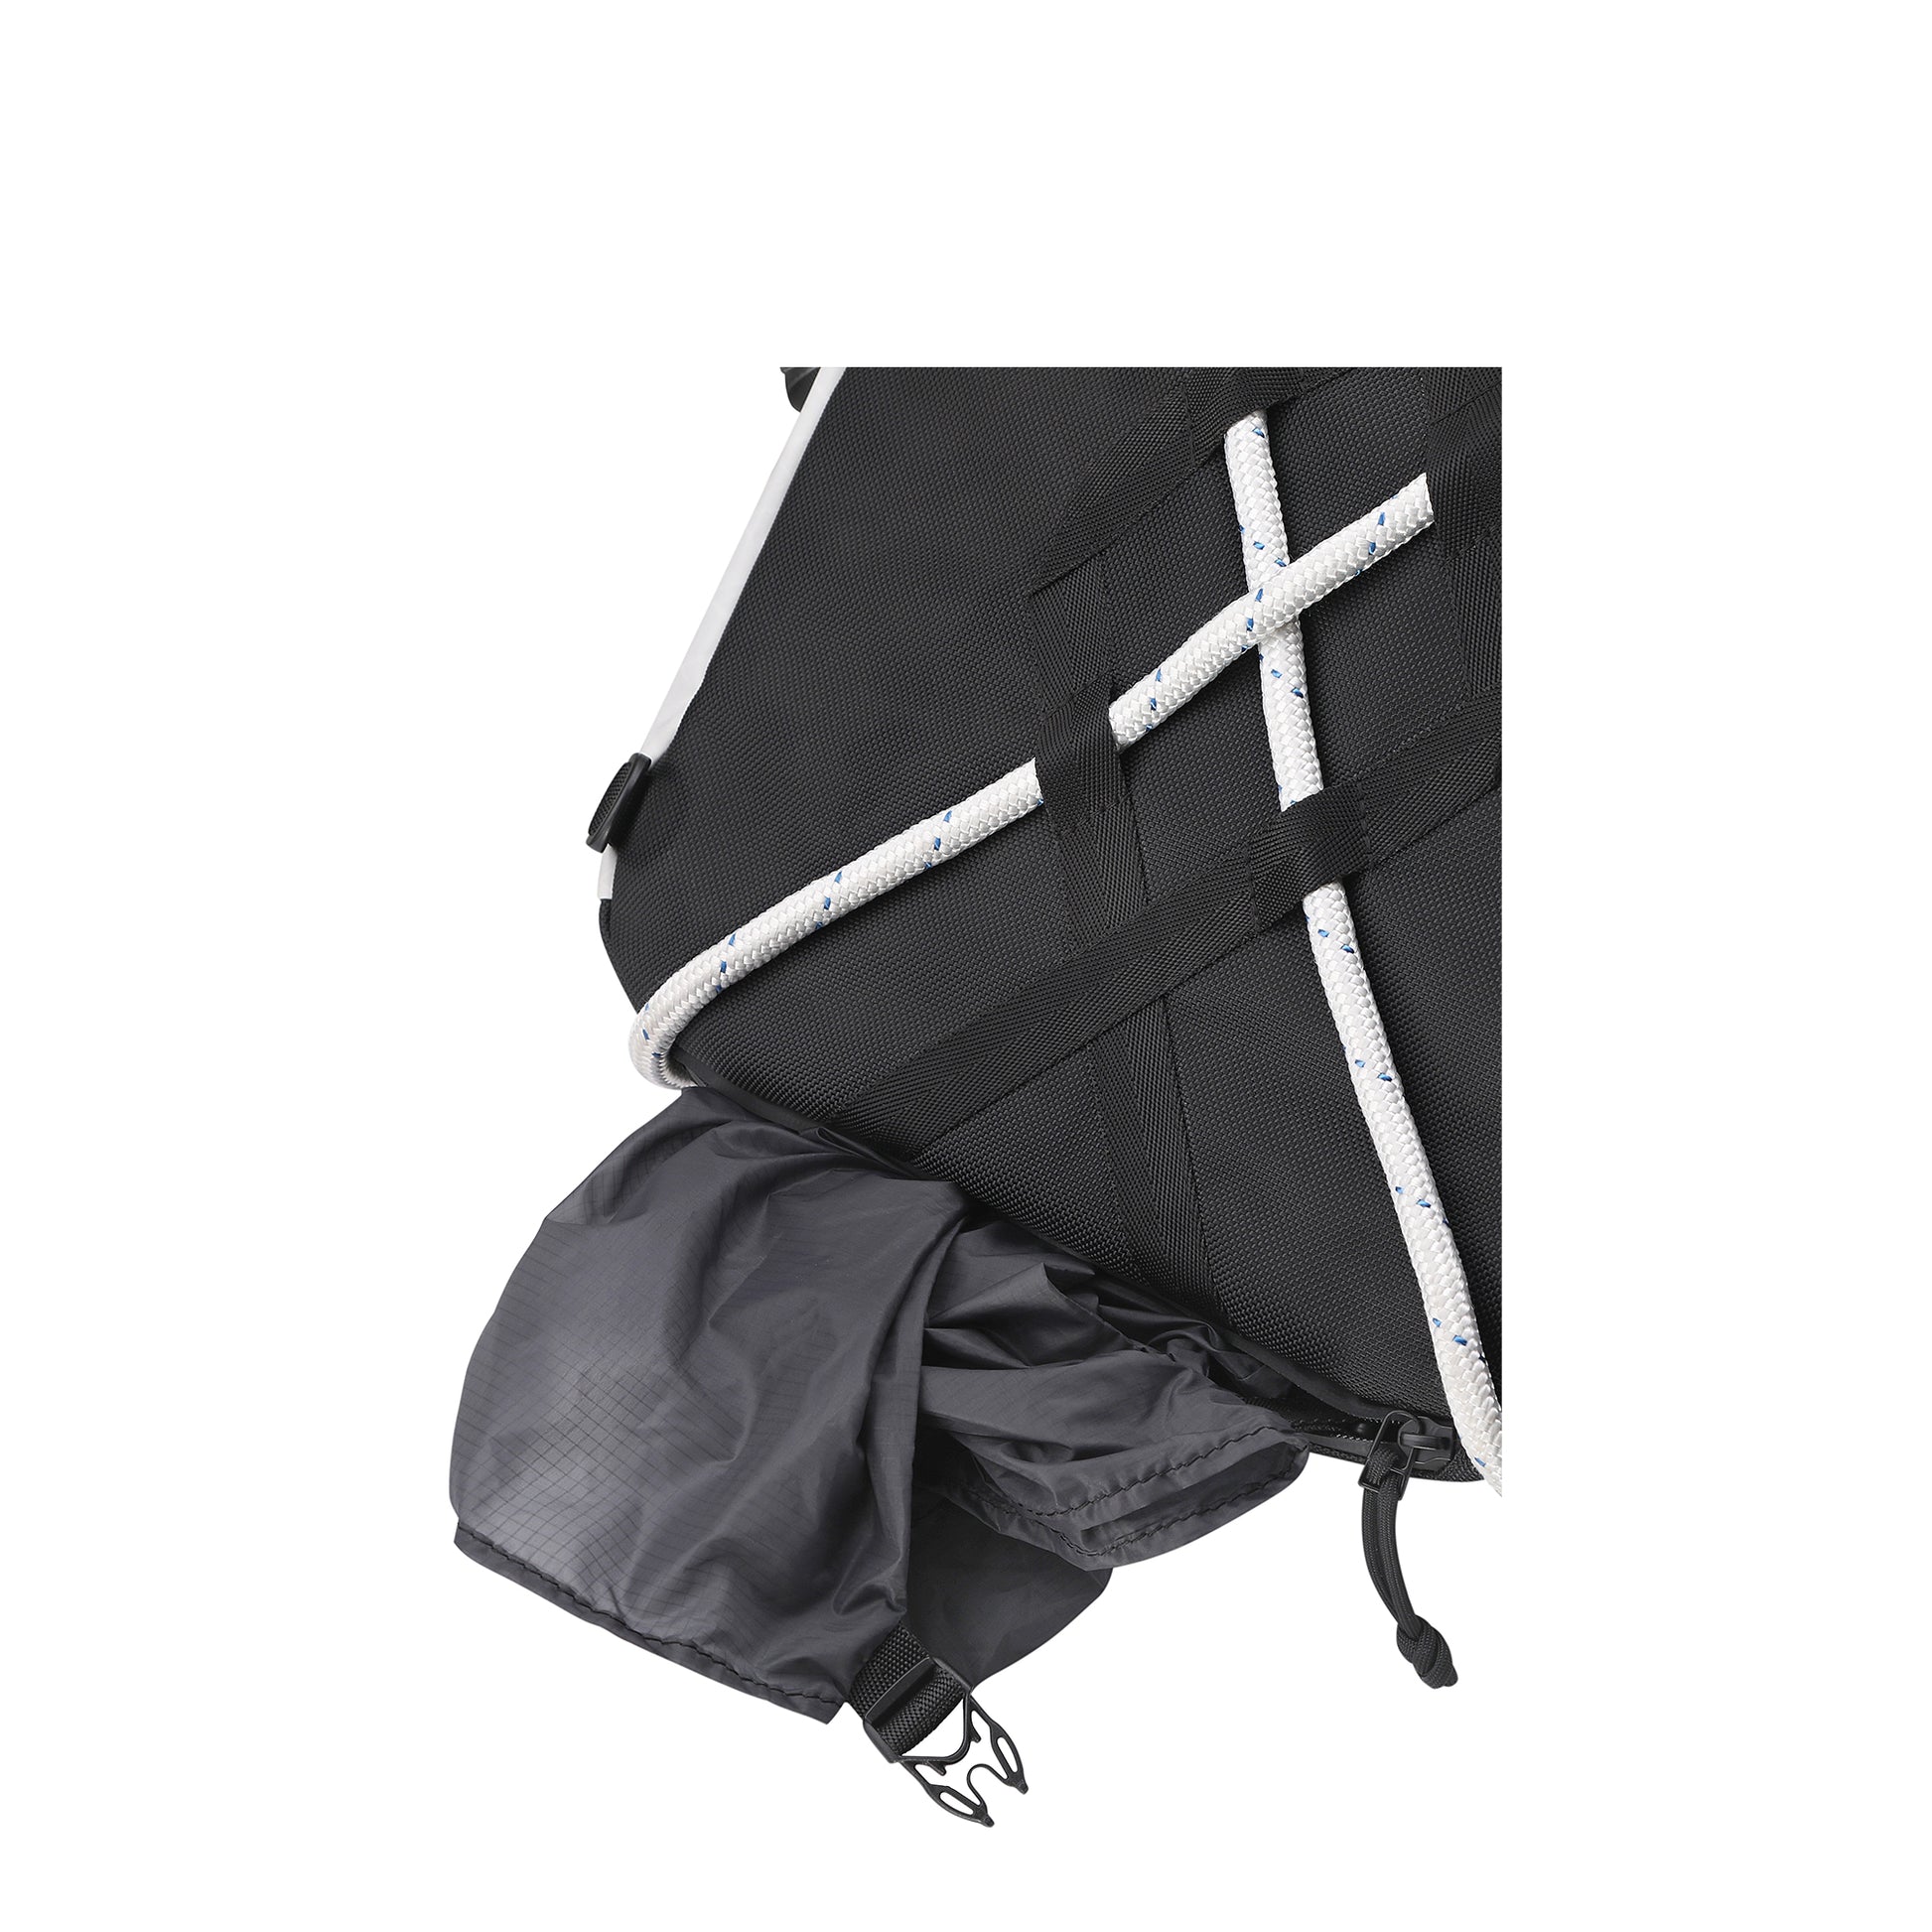 Designer handbag with raincover